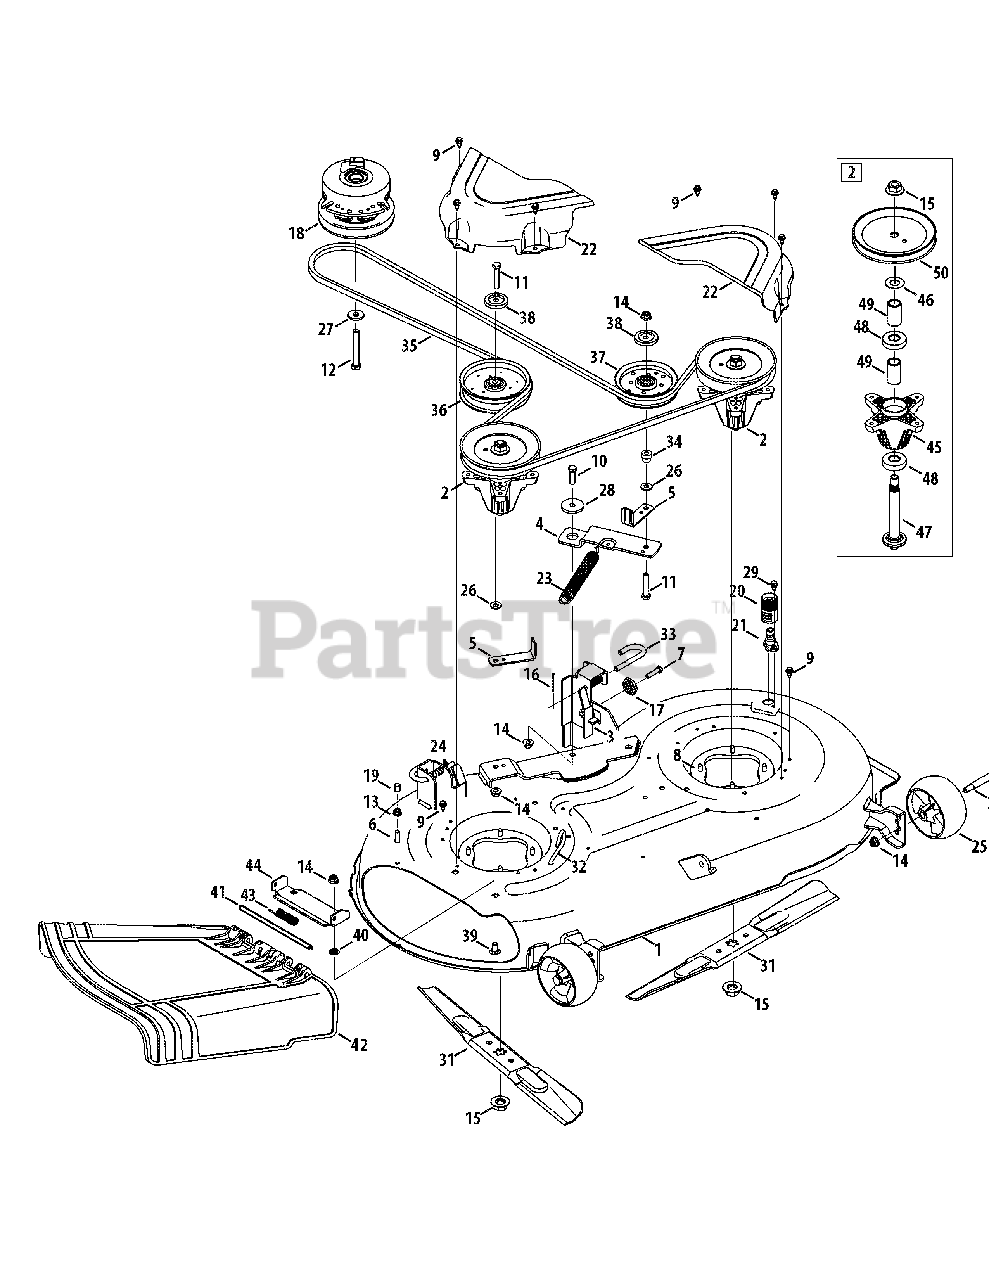 Craftsman 247.204110 (17AKCACS099) - Craftsman Z6000 Zero-Turn Mower ...